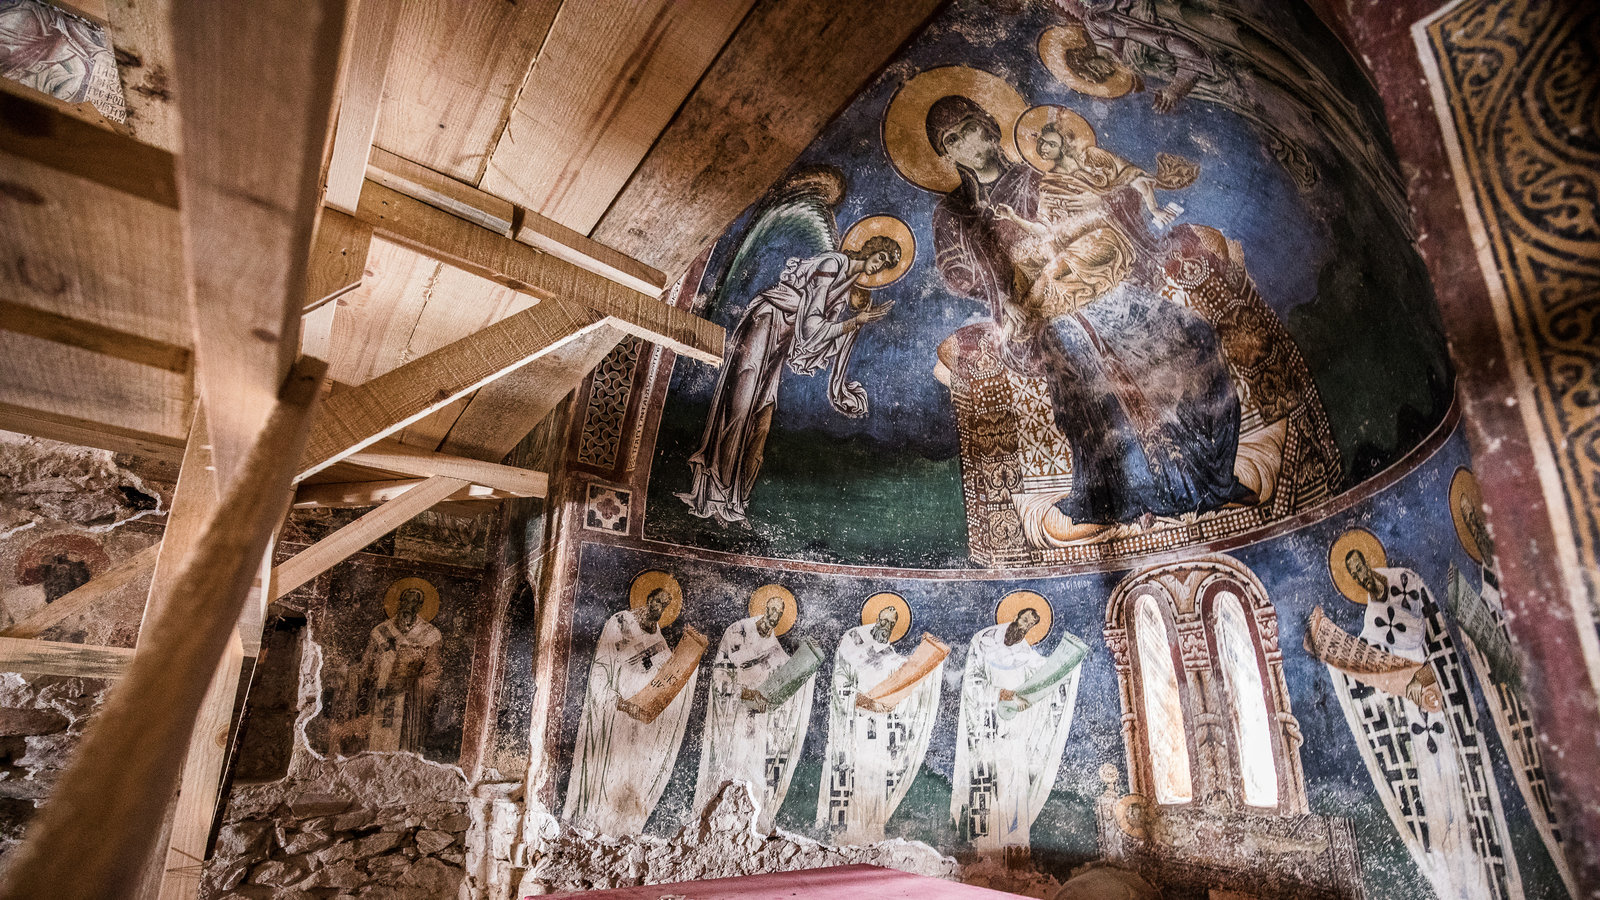 Church Sveti Gjorgi, Kurbinovo , HD Wallpaper & Backgrounds